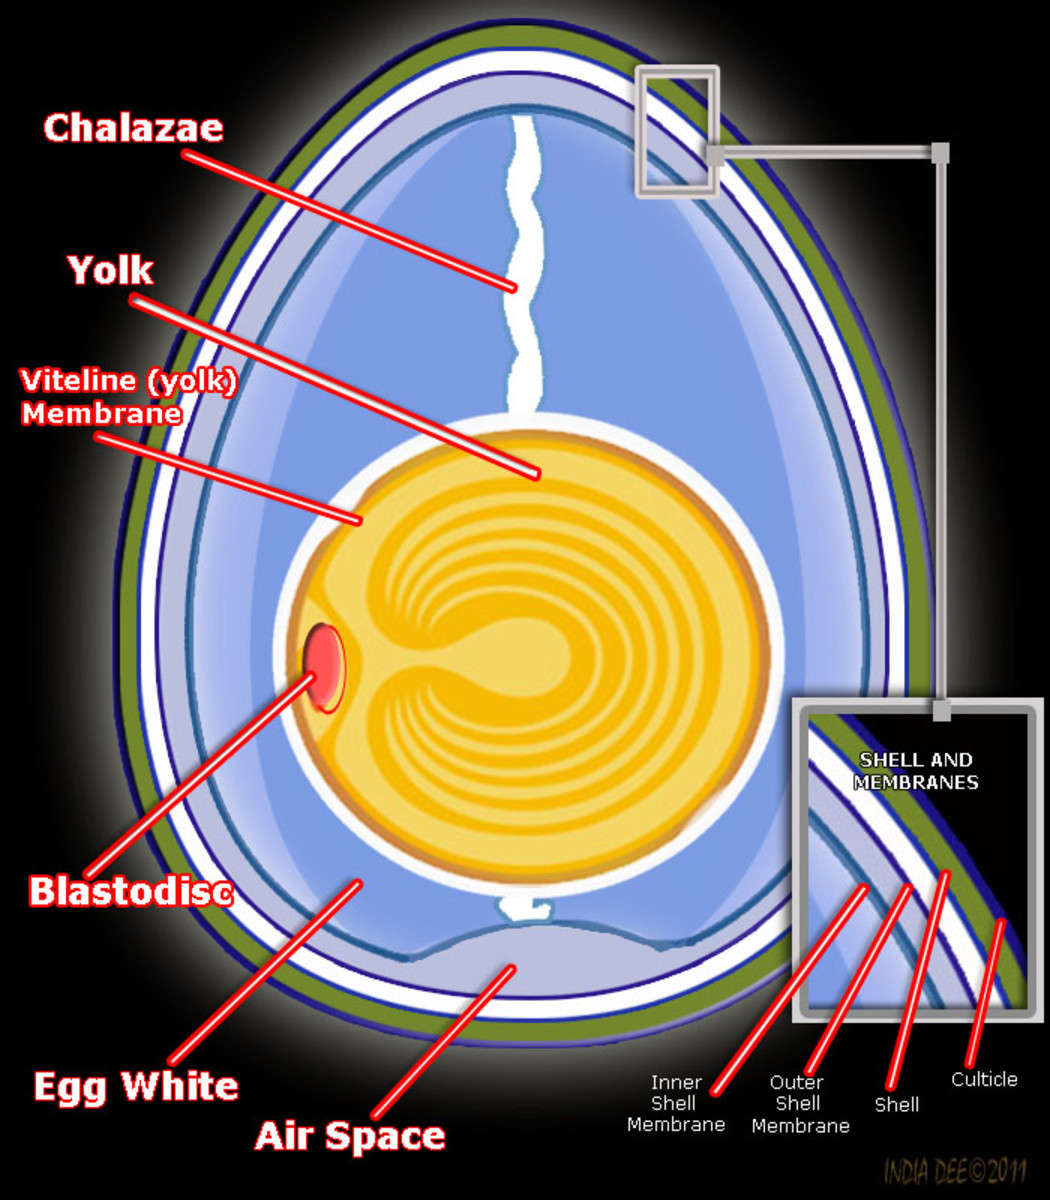 Chicken Egg Anatomy